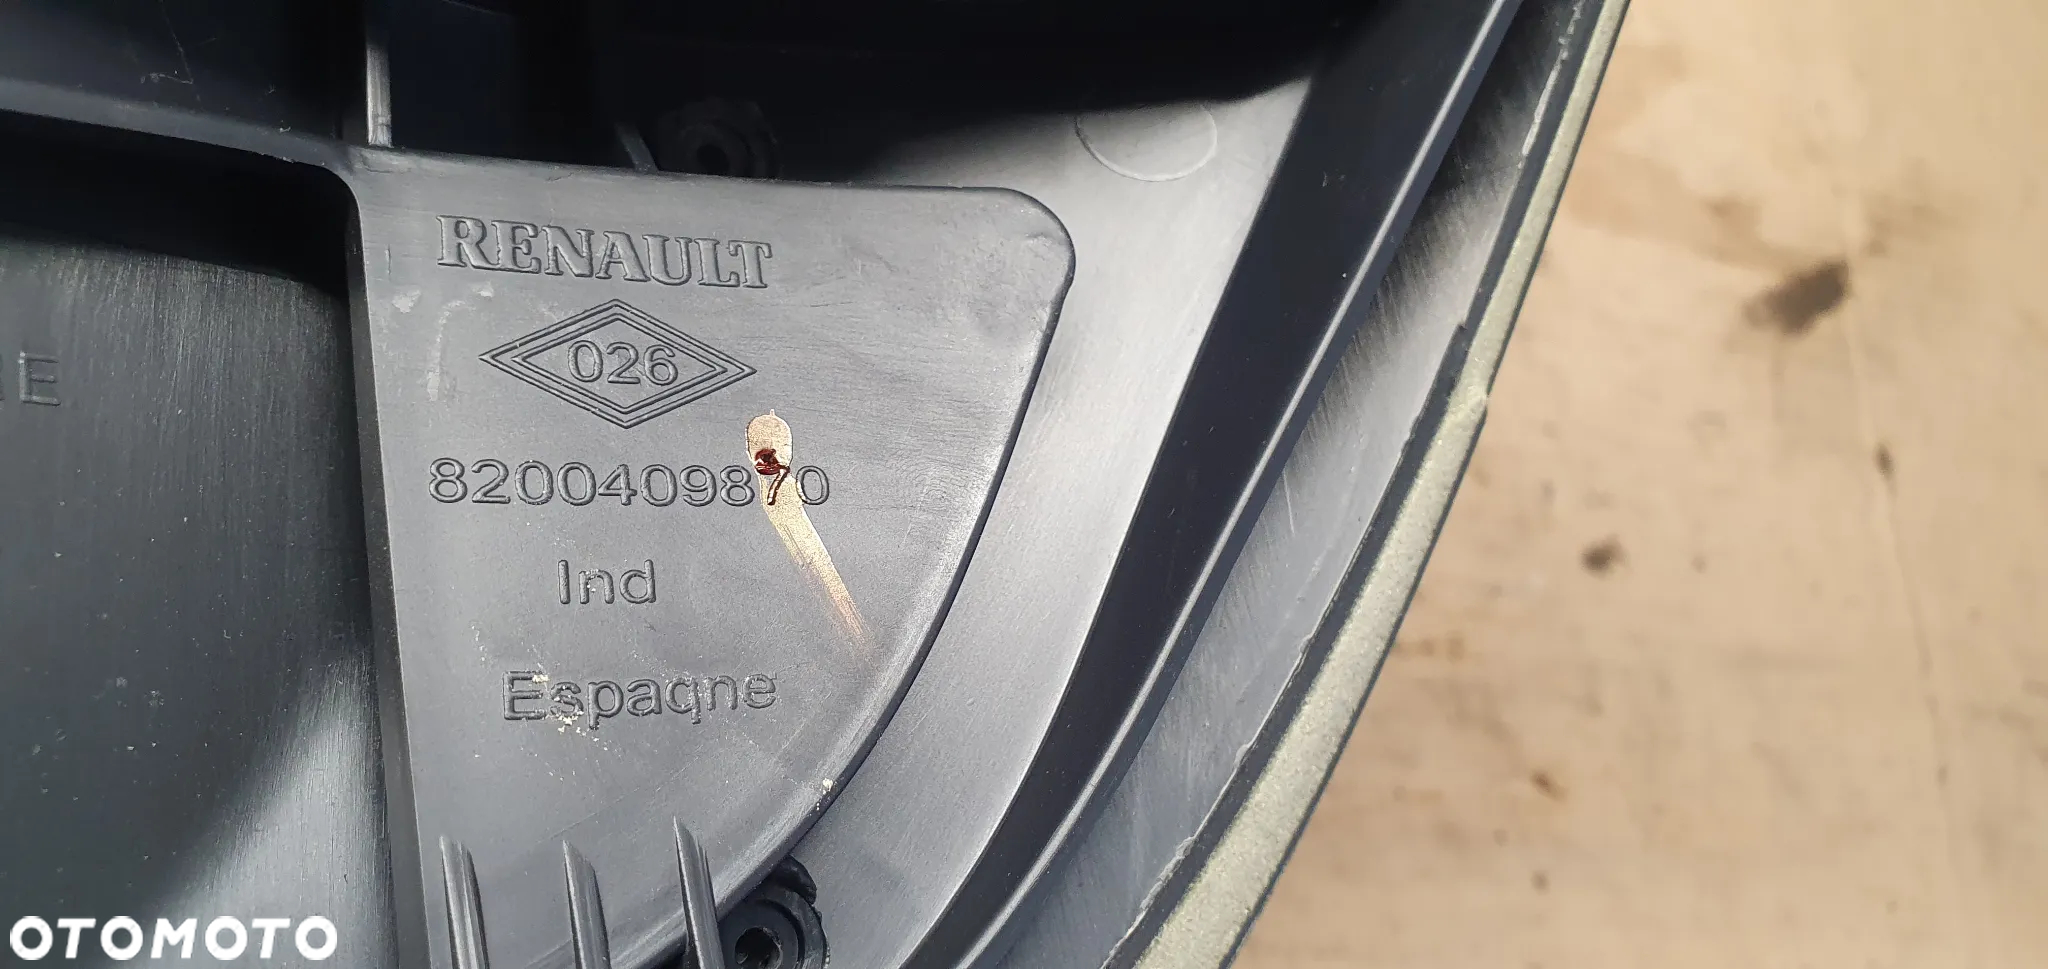 Osłona obudowa licznika zegarów daszek Renault Megane II 8200409870 - 4